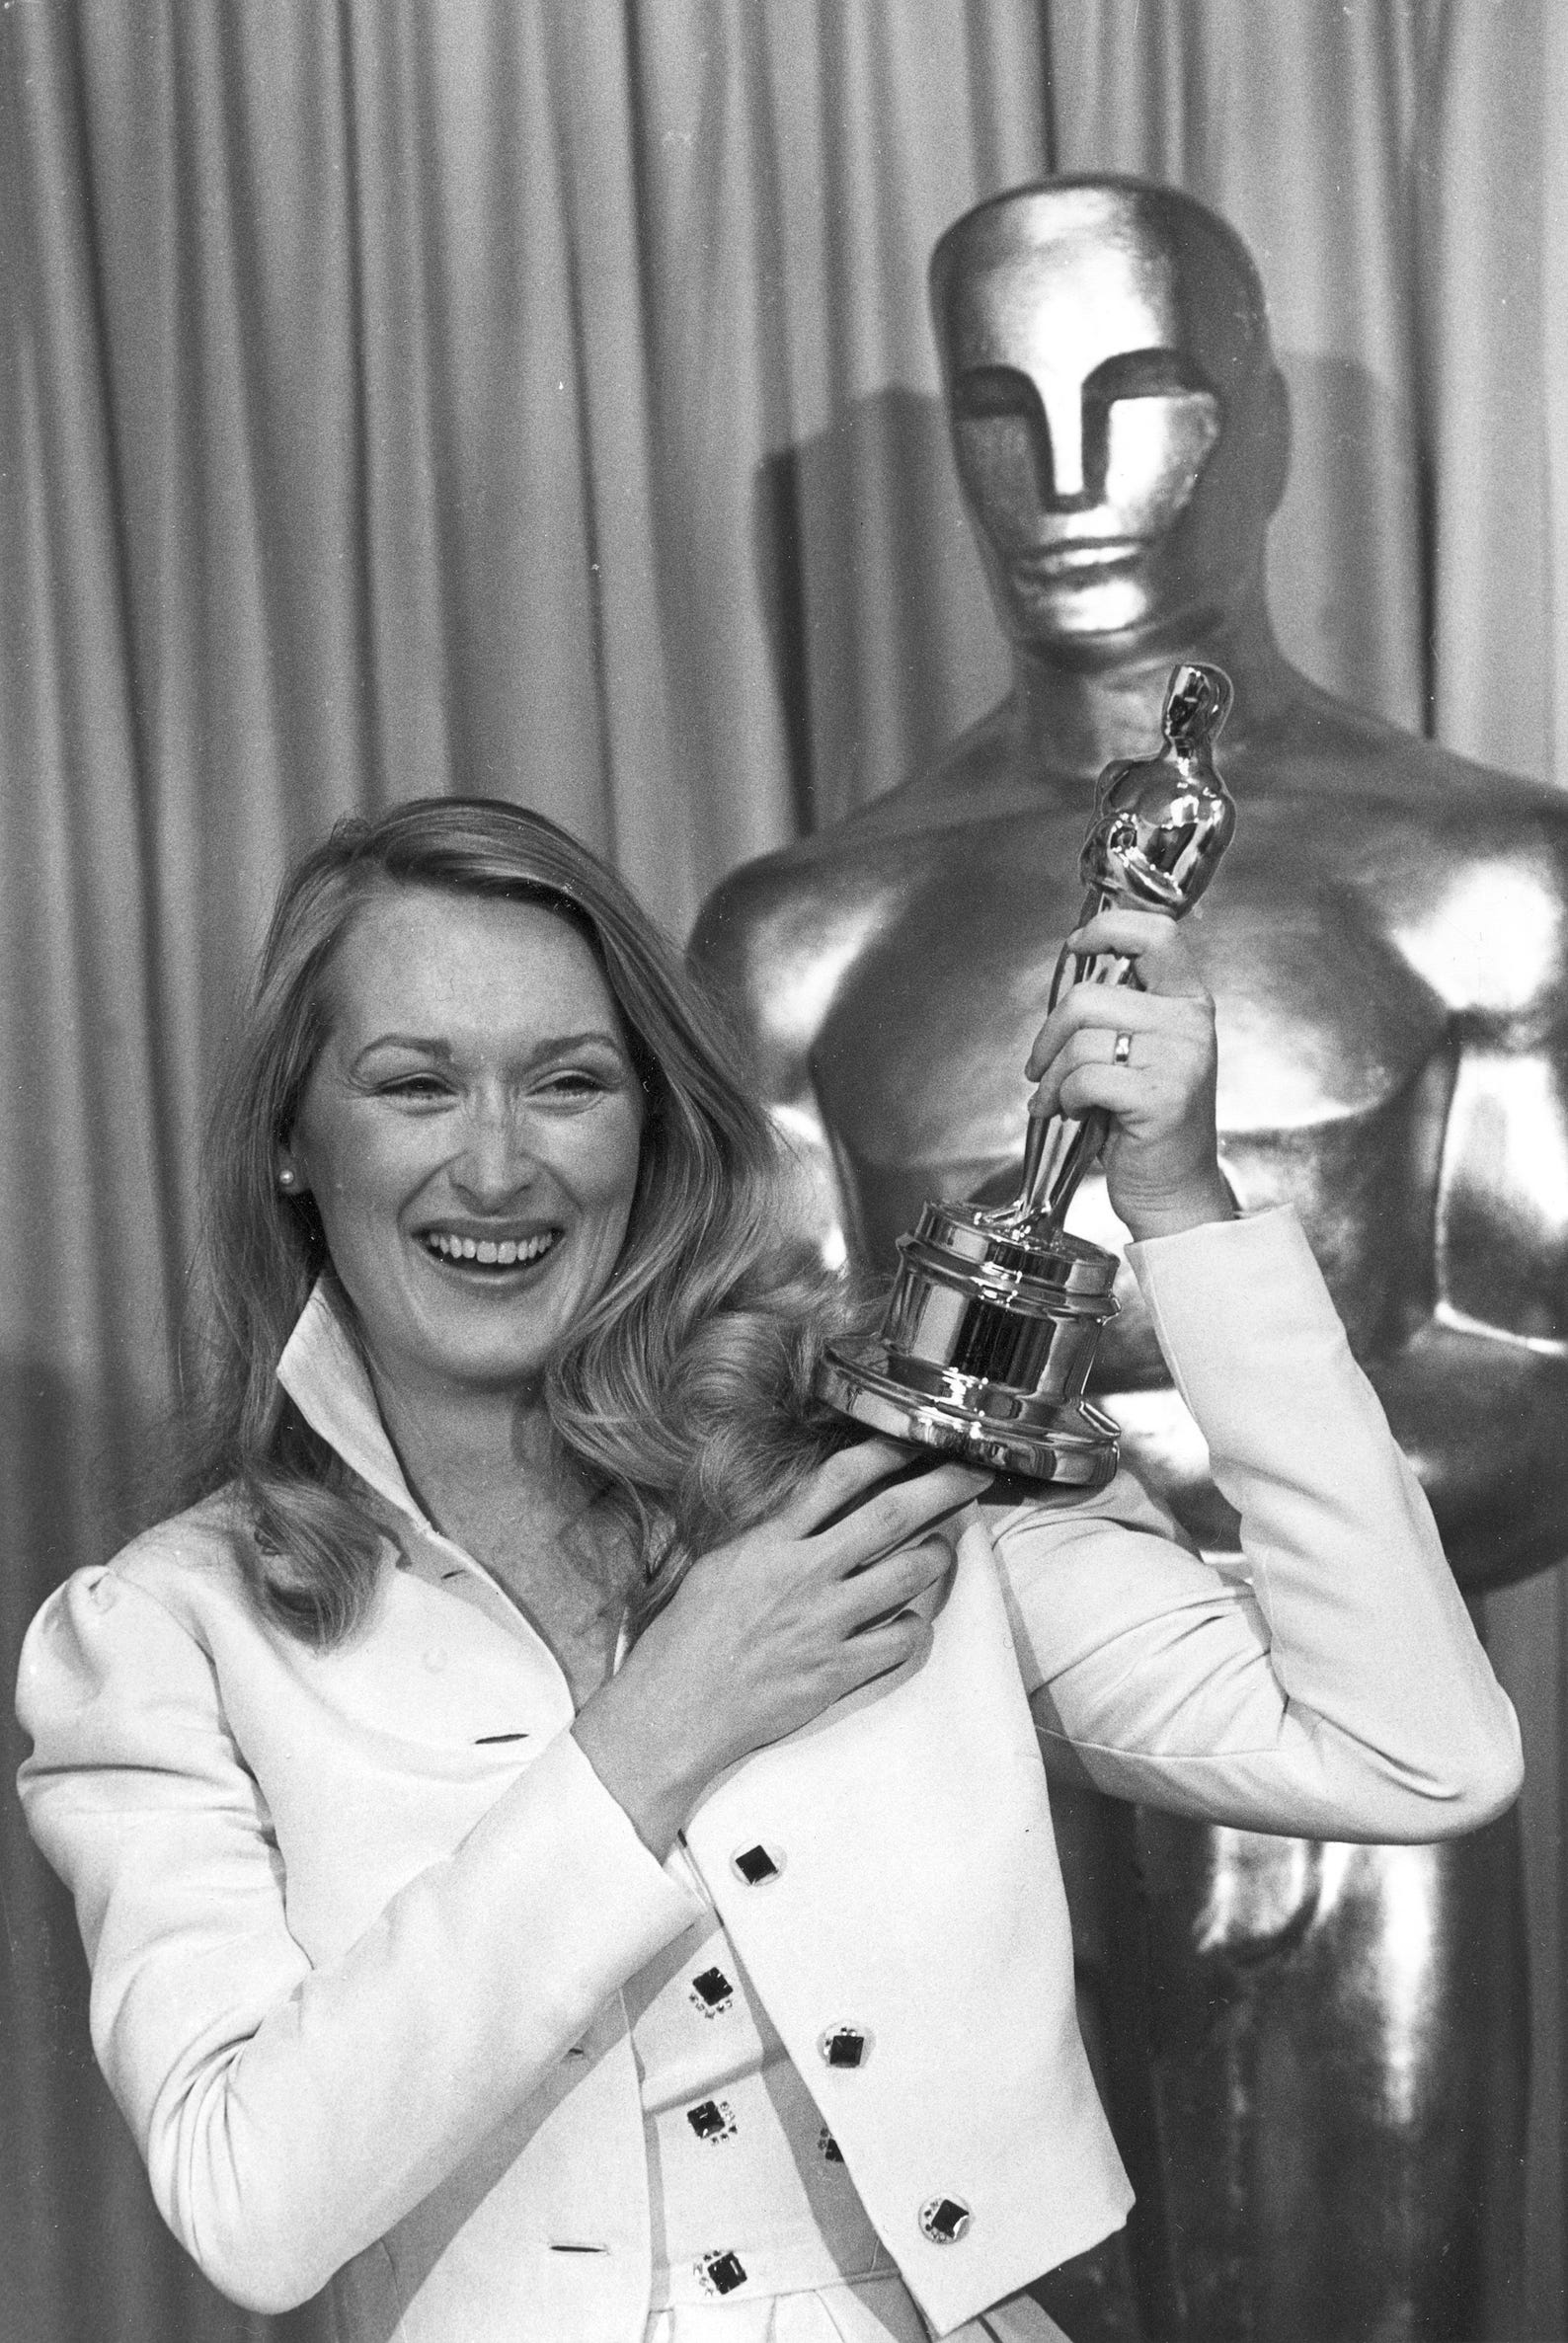 Meryl Streep The Oscar Legend Through The Years In Photos